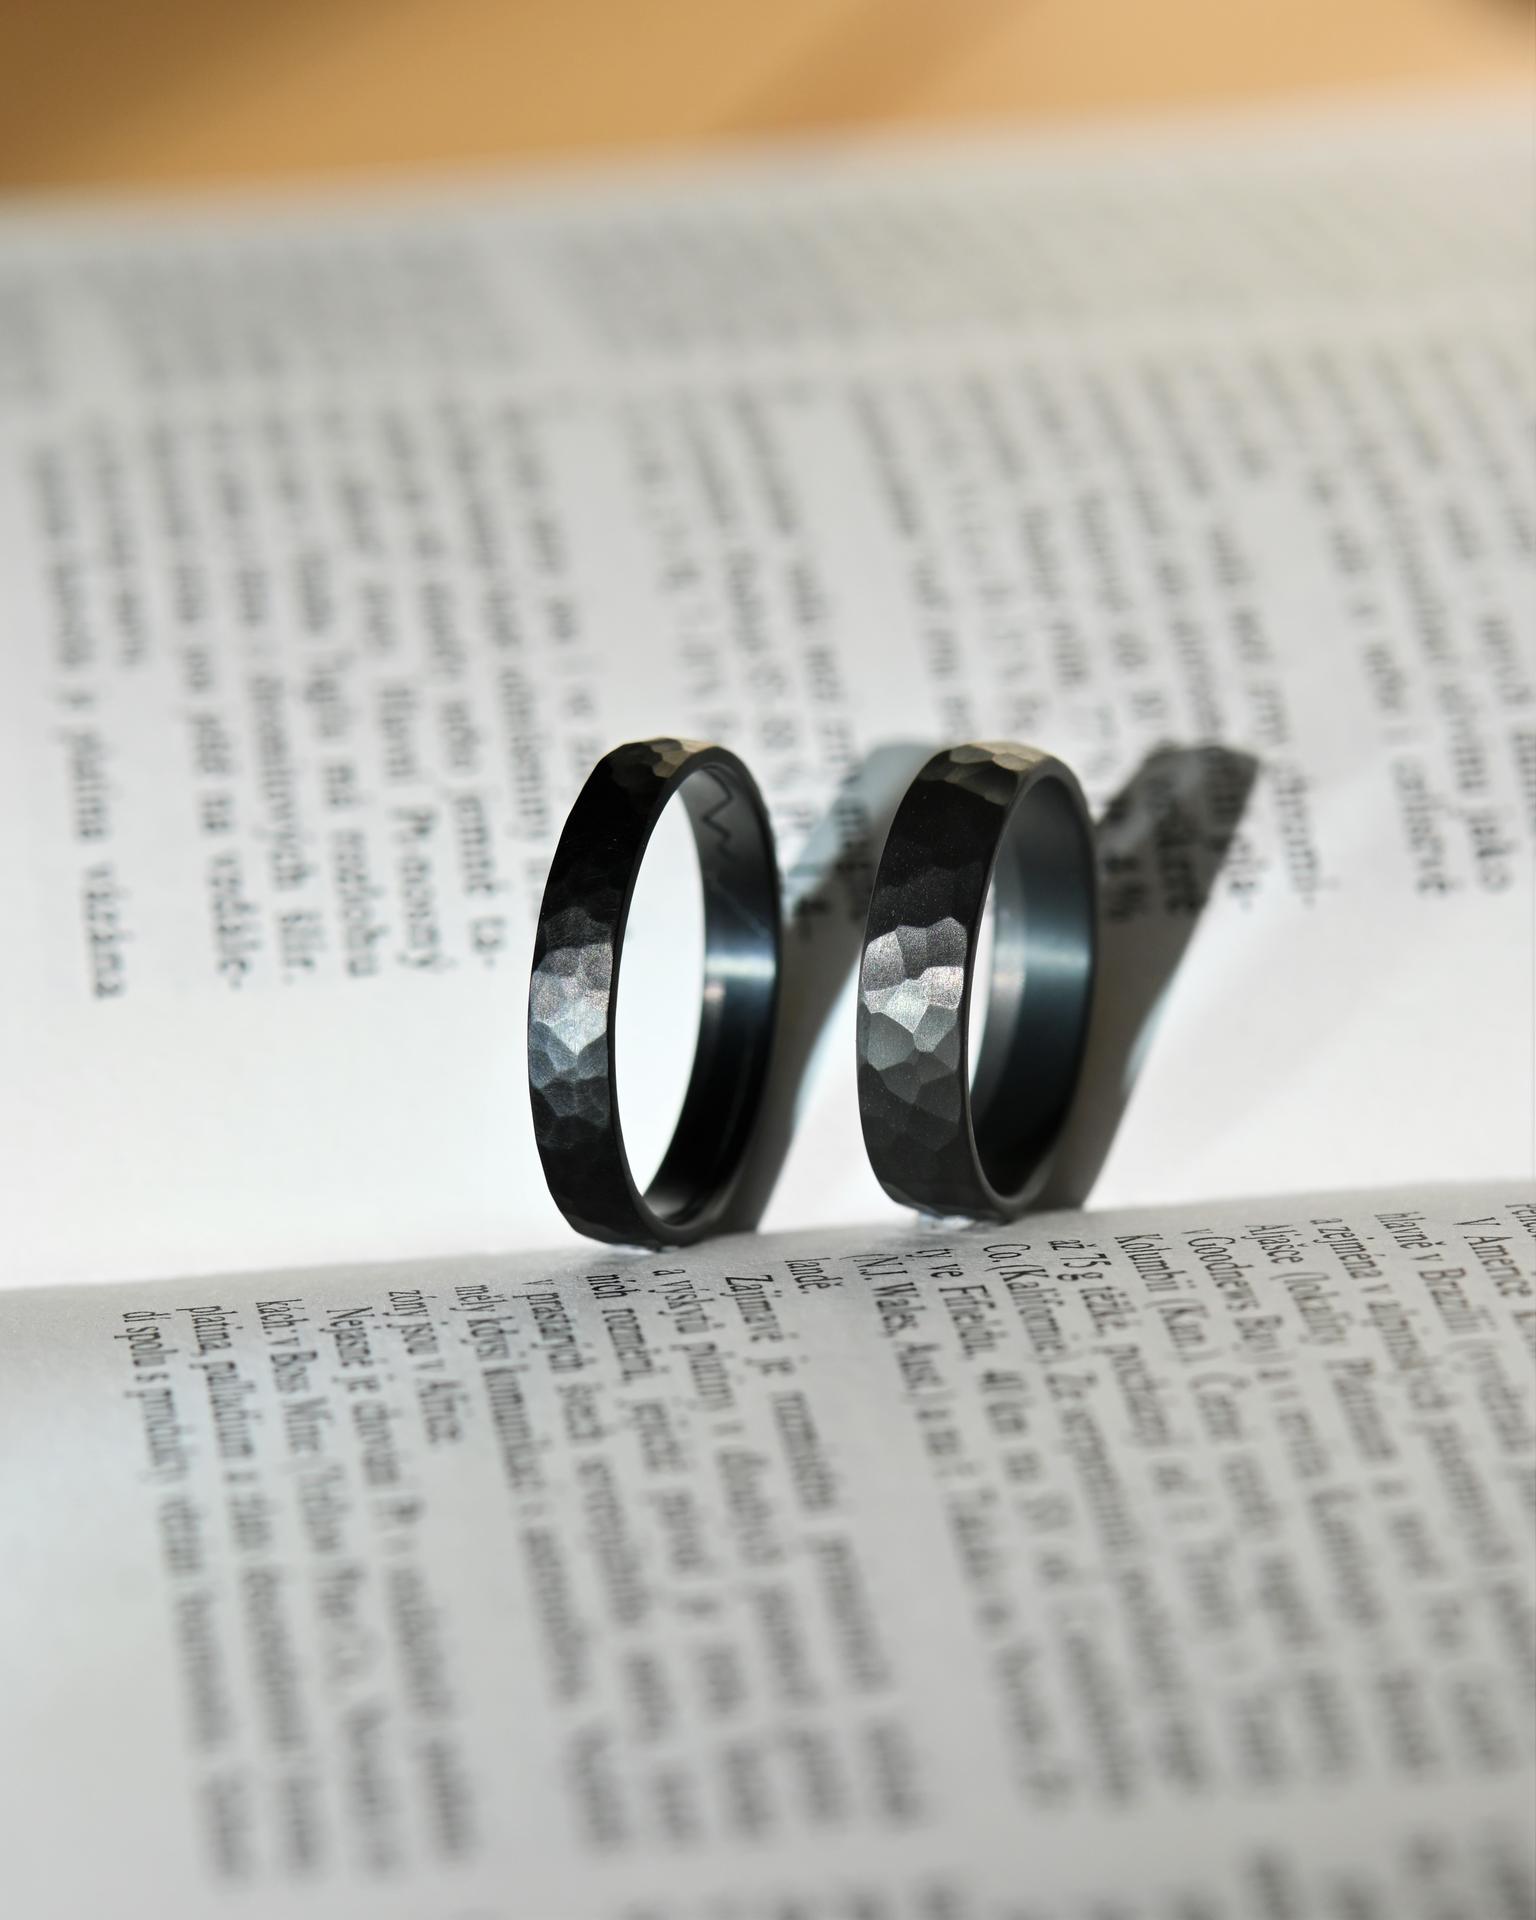 Cože, černé snubní prsteny? 😮 - Kované snubní prsteny z karbonizovaného titanu